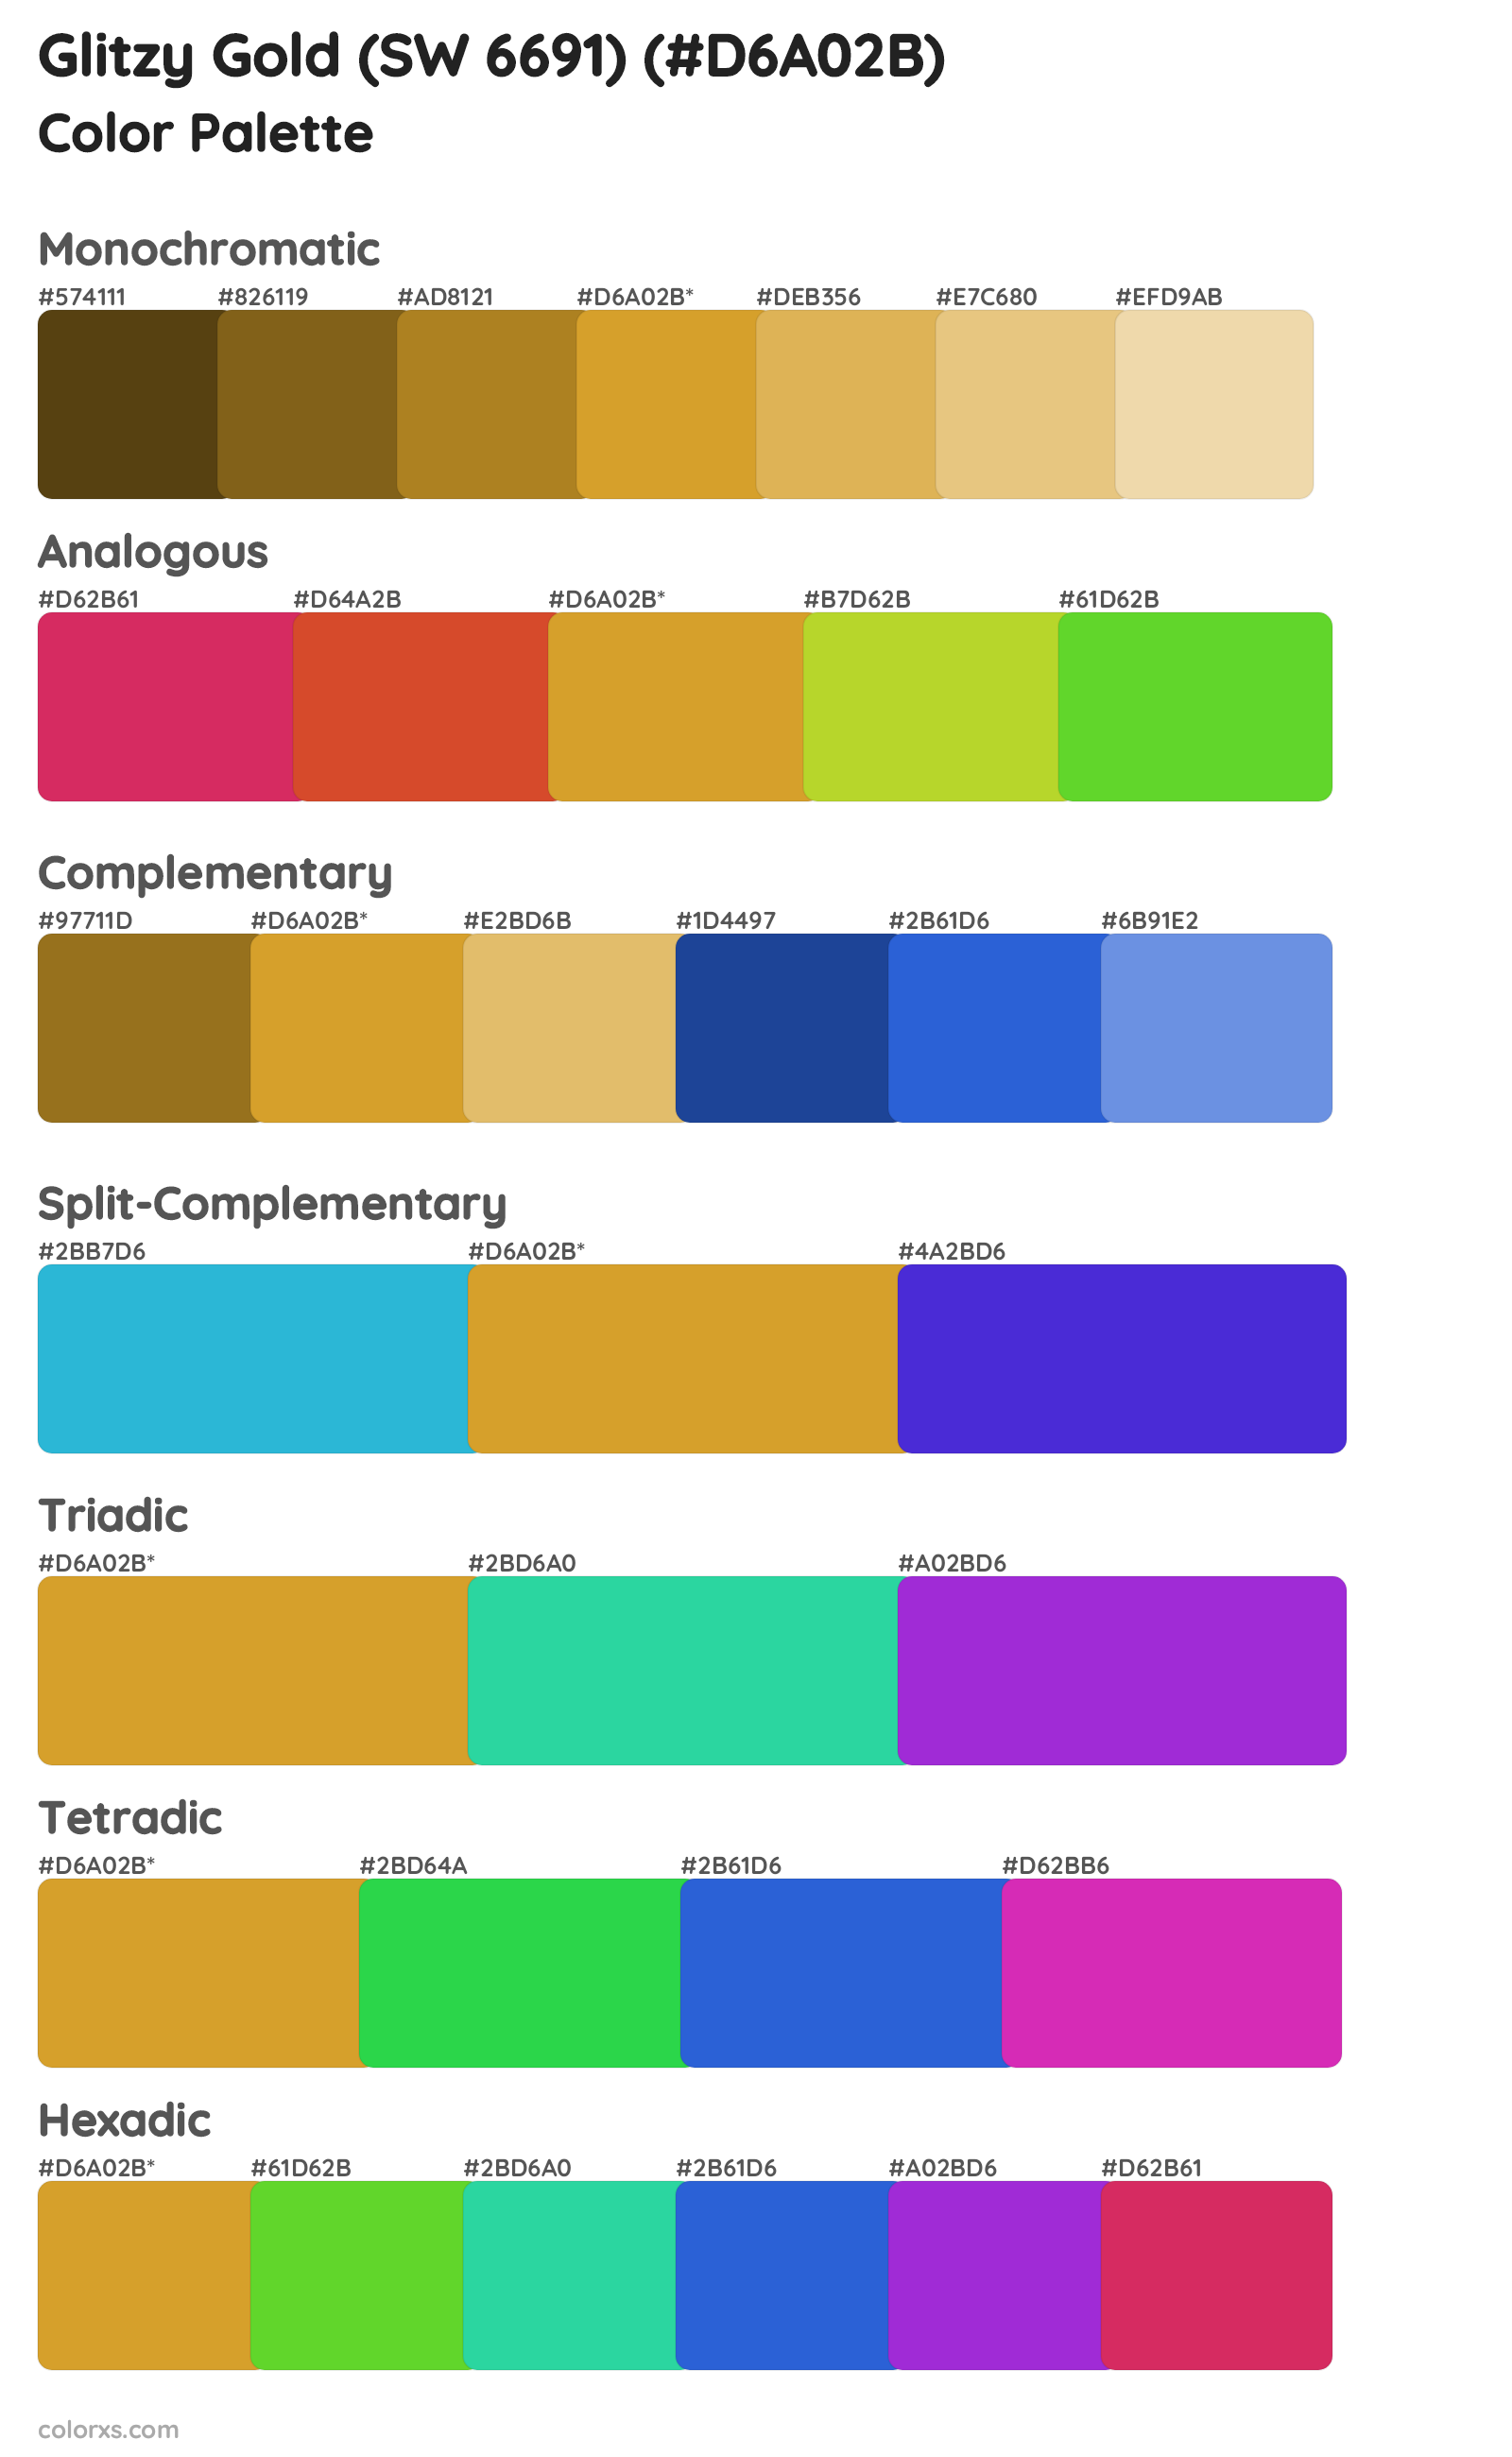 Glitzy Gold (SW 6691) Color Scheme Palettes